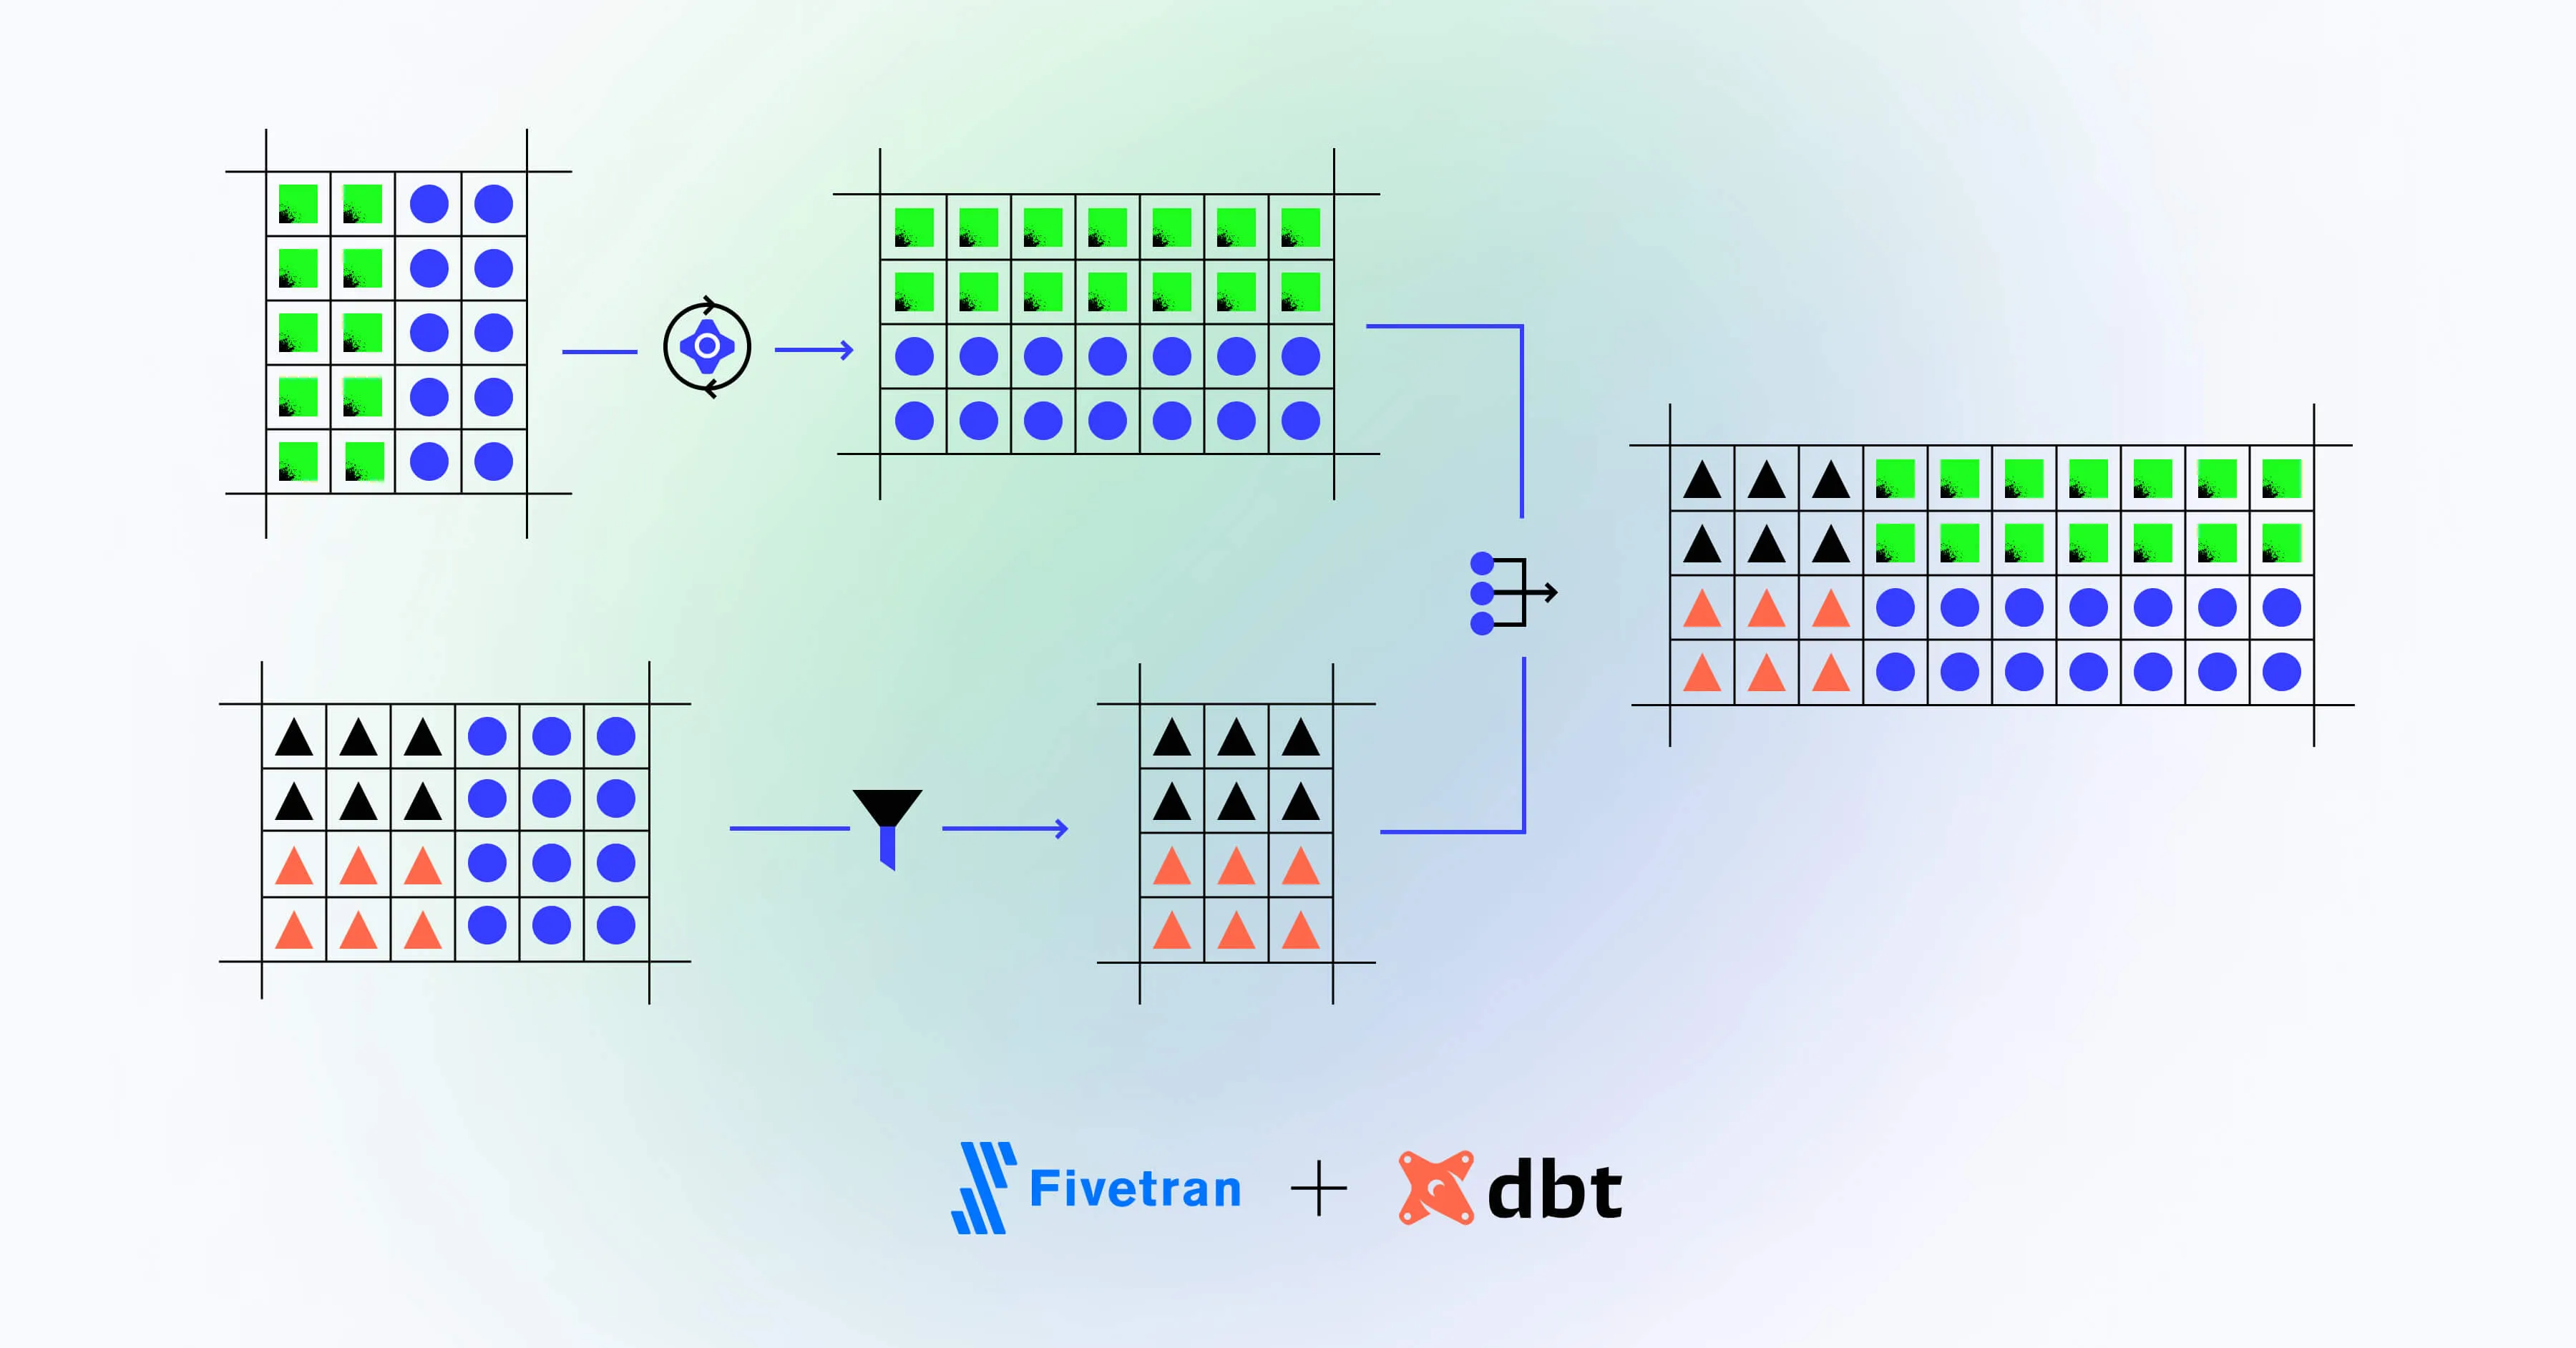 Fivetran integrates with dbt